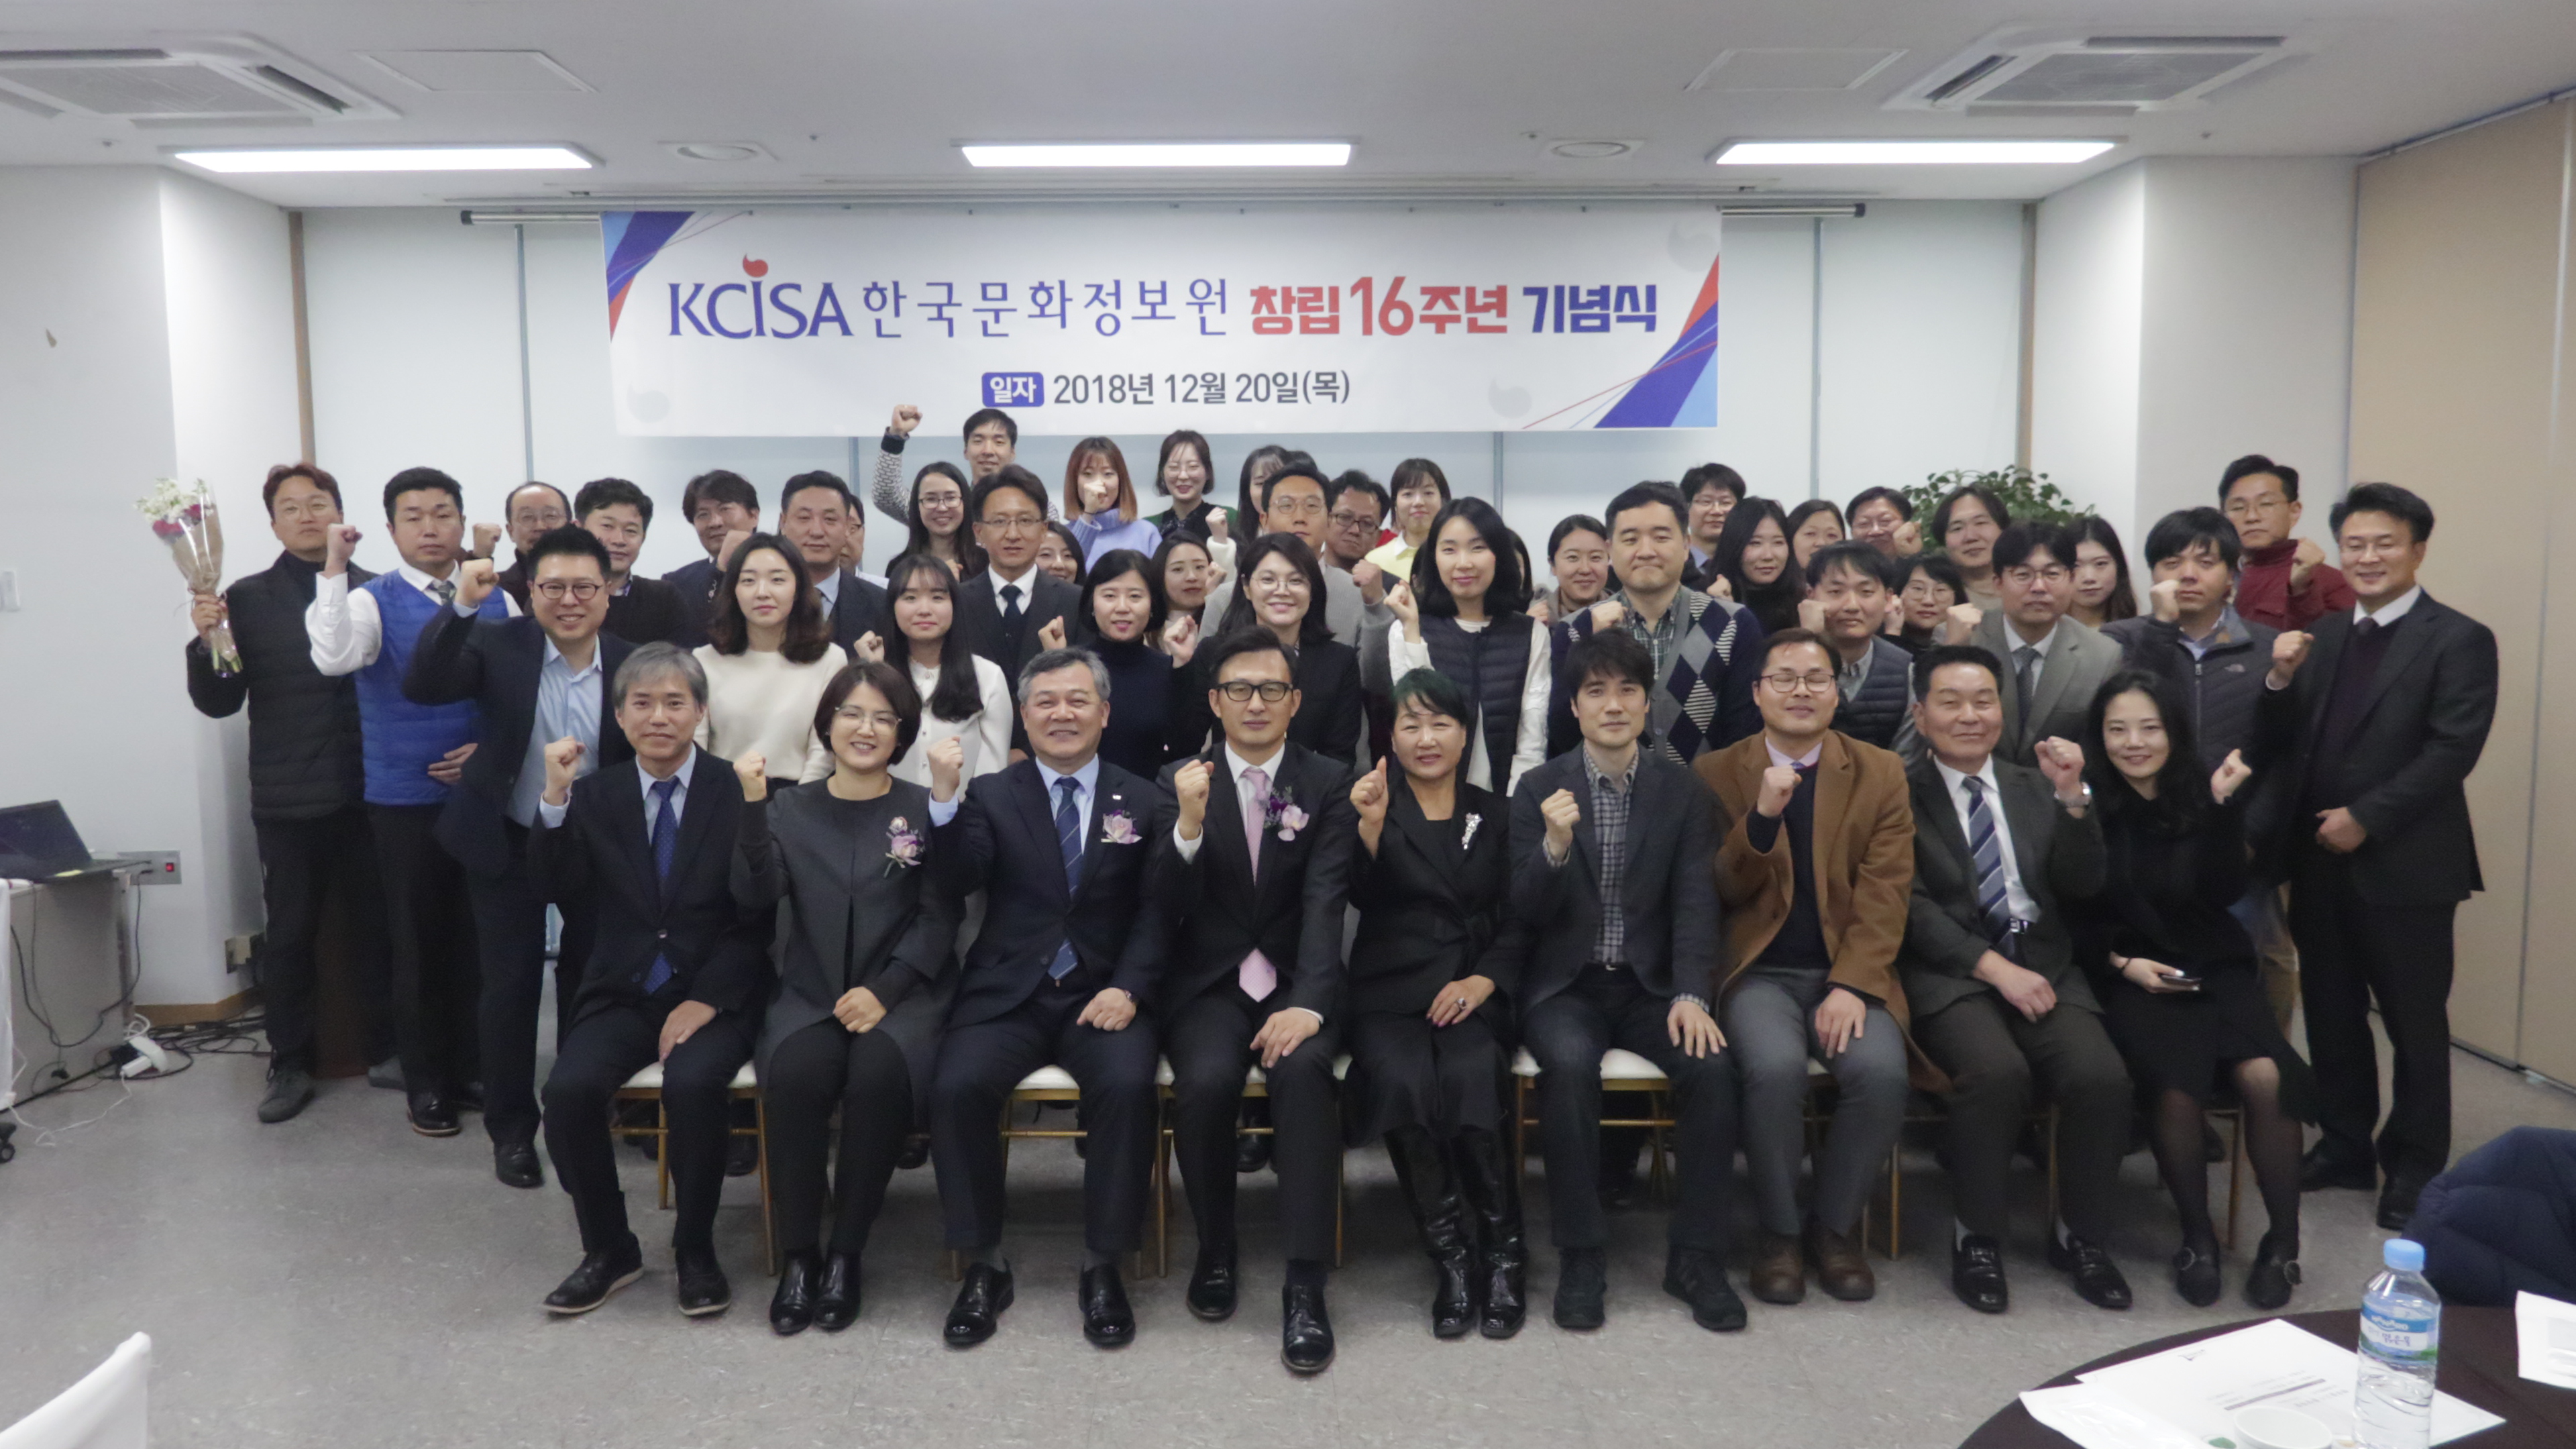 2018년 12월 20(목) 한국문화정보원 창립 16주년 기념식 개최 및 단체사진